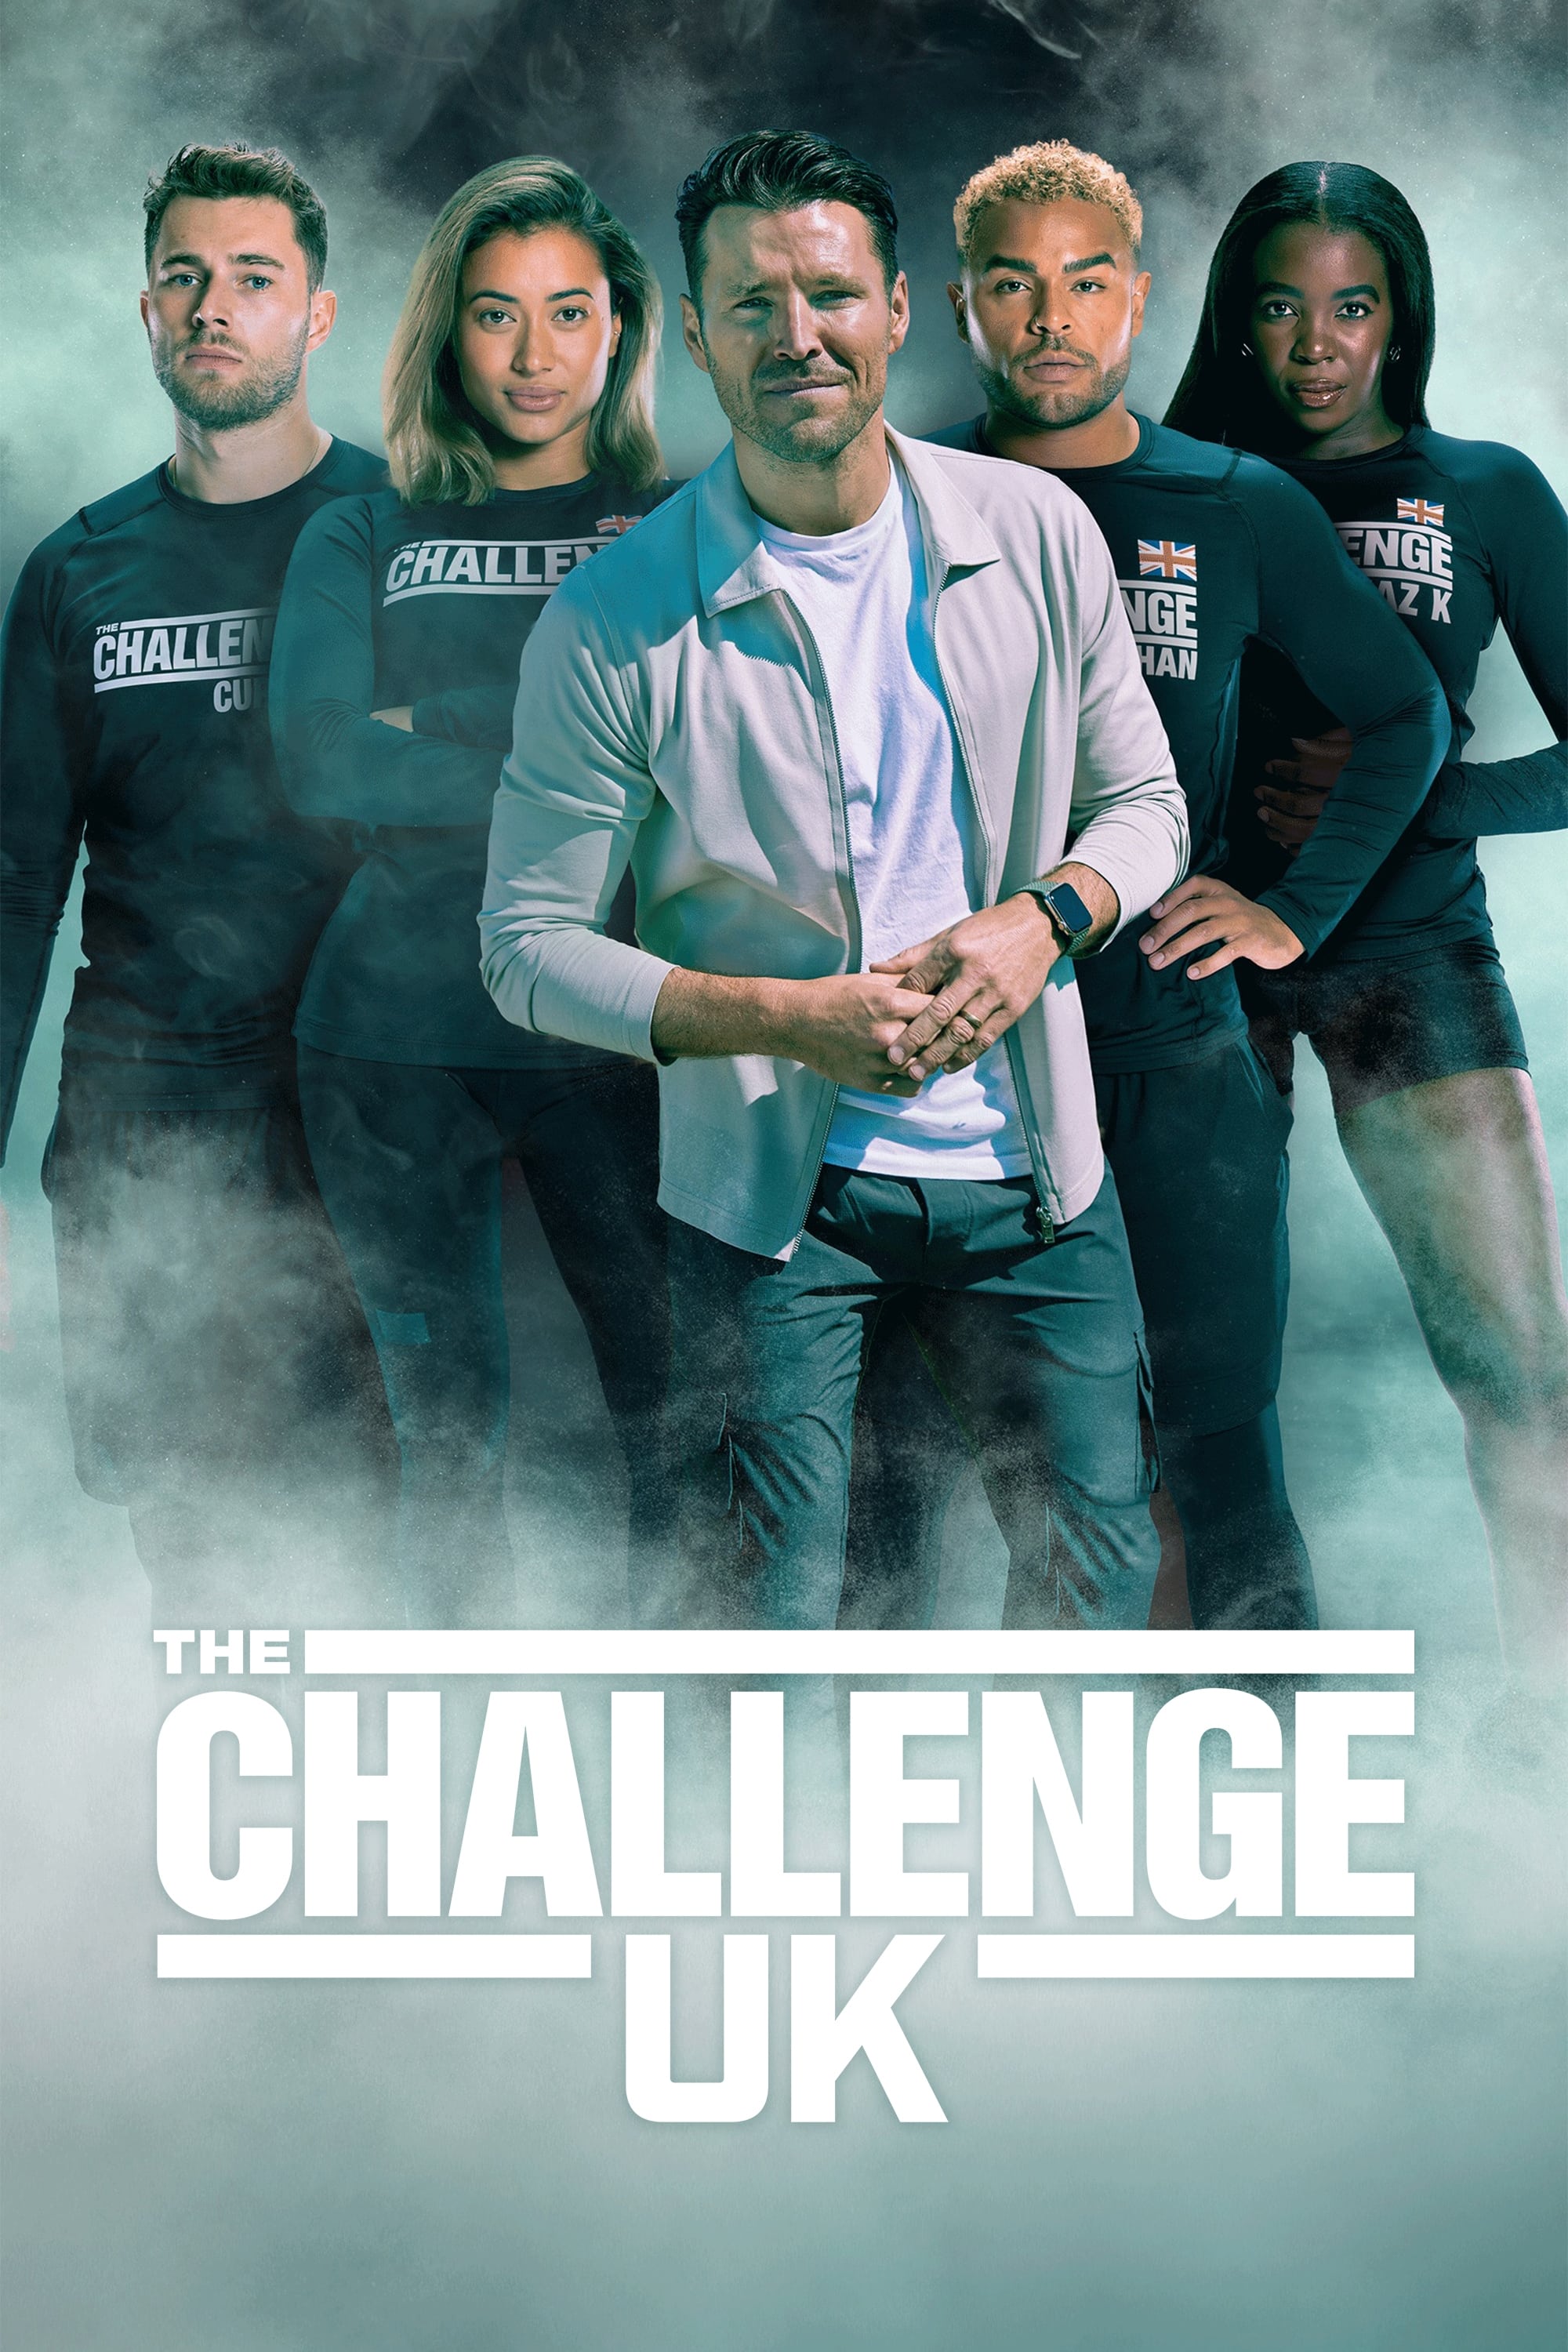 The Challenge UK